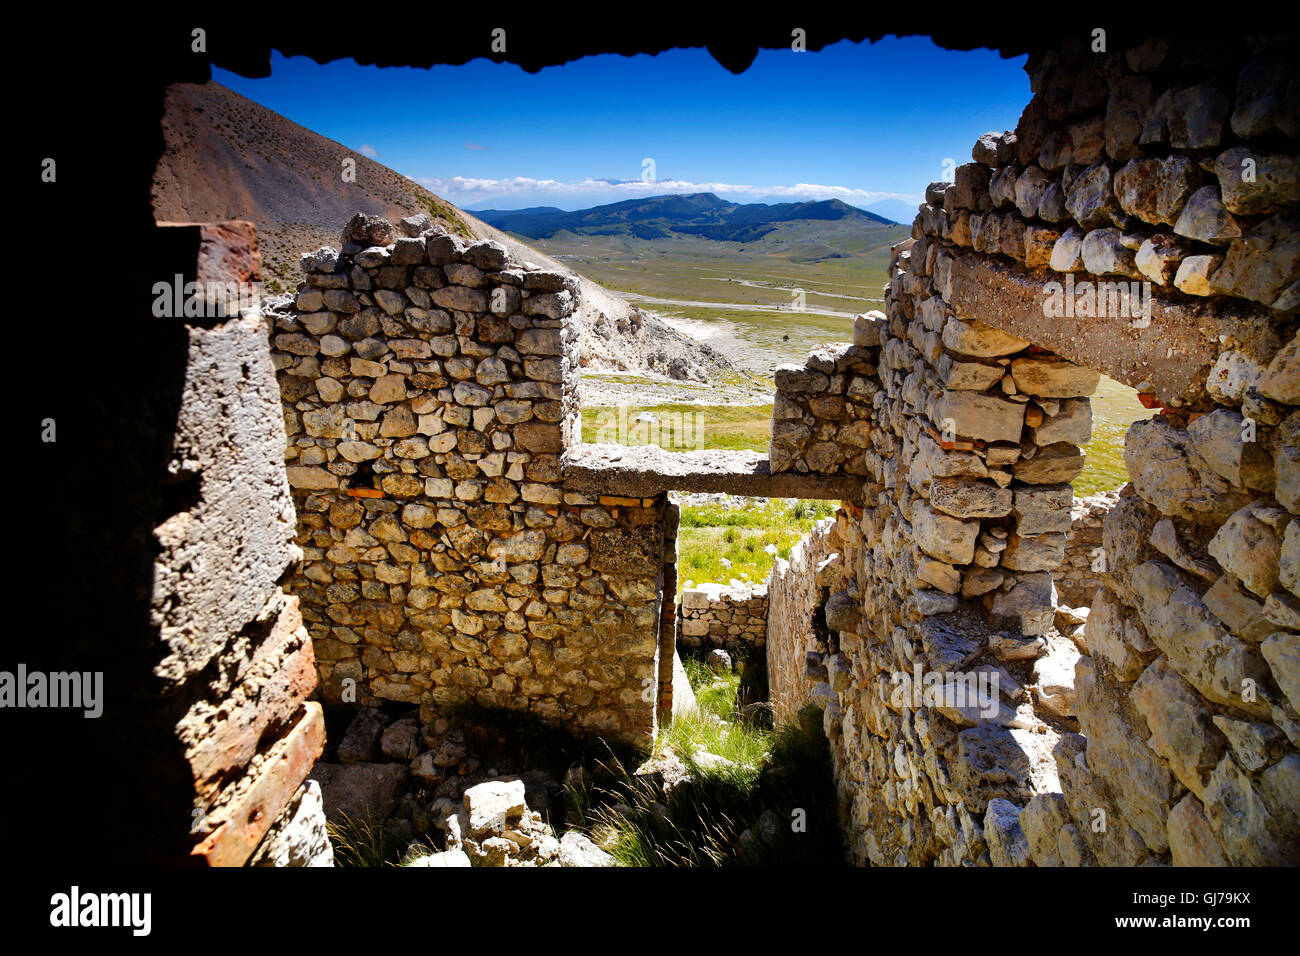 Vieux bâtiments miniers sur Campo Imperatore dans le Parc National du Gran Sasso, Abruzzo, Italie. Banque D'Images